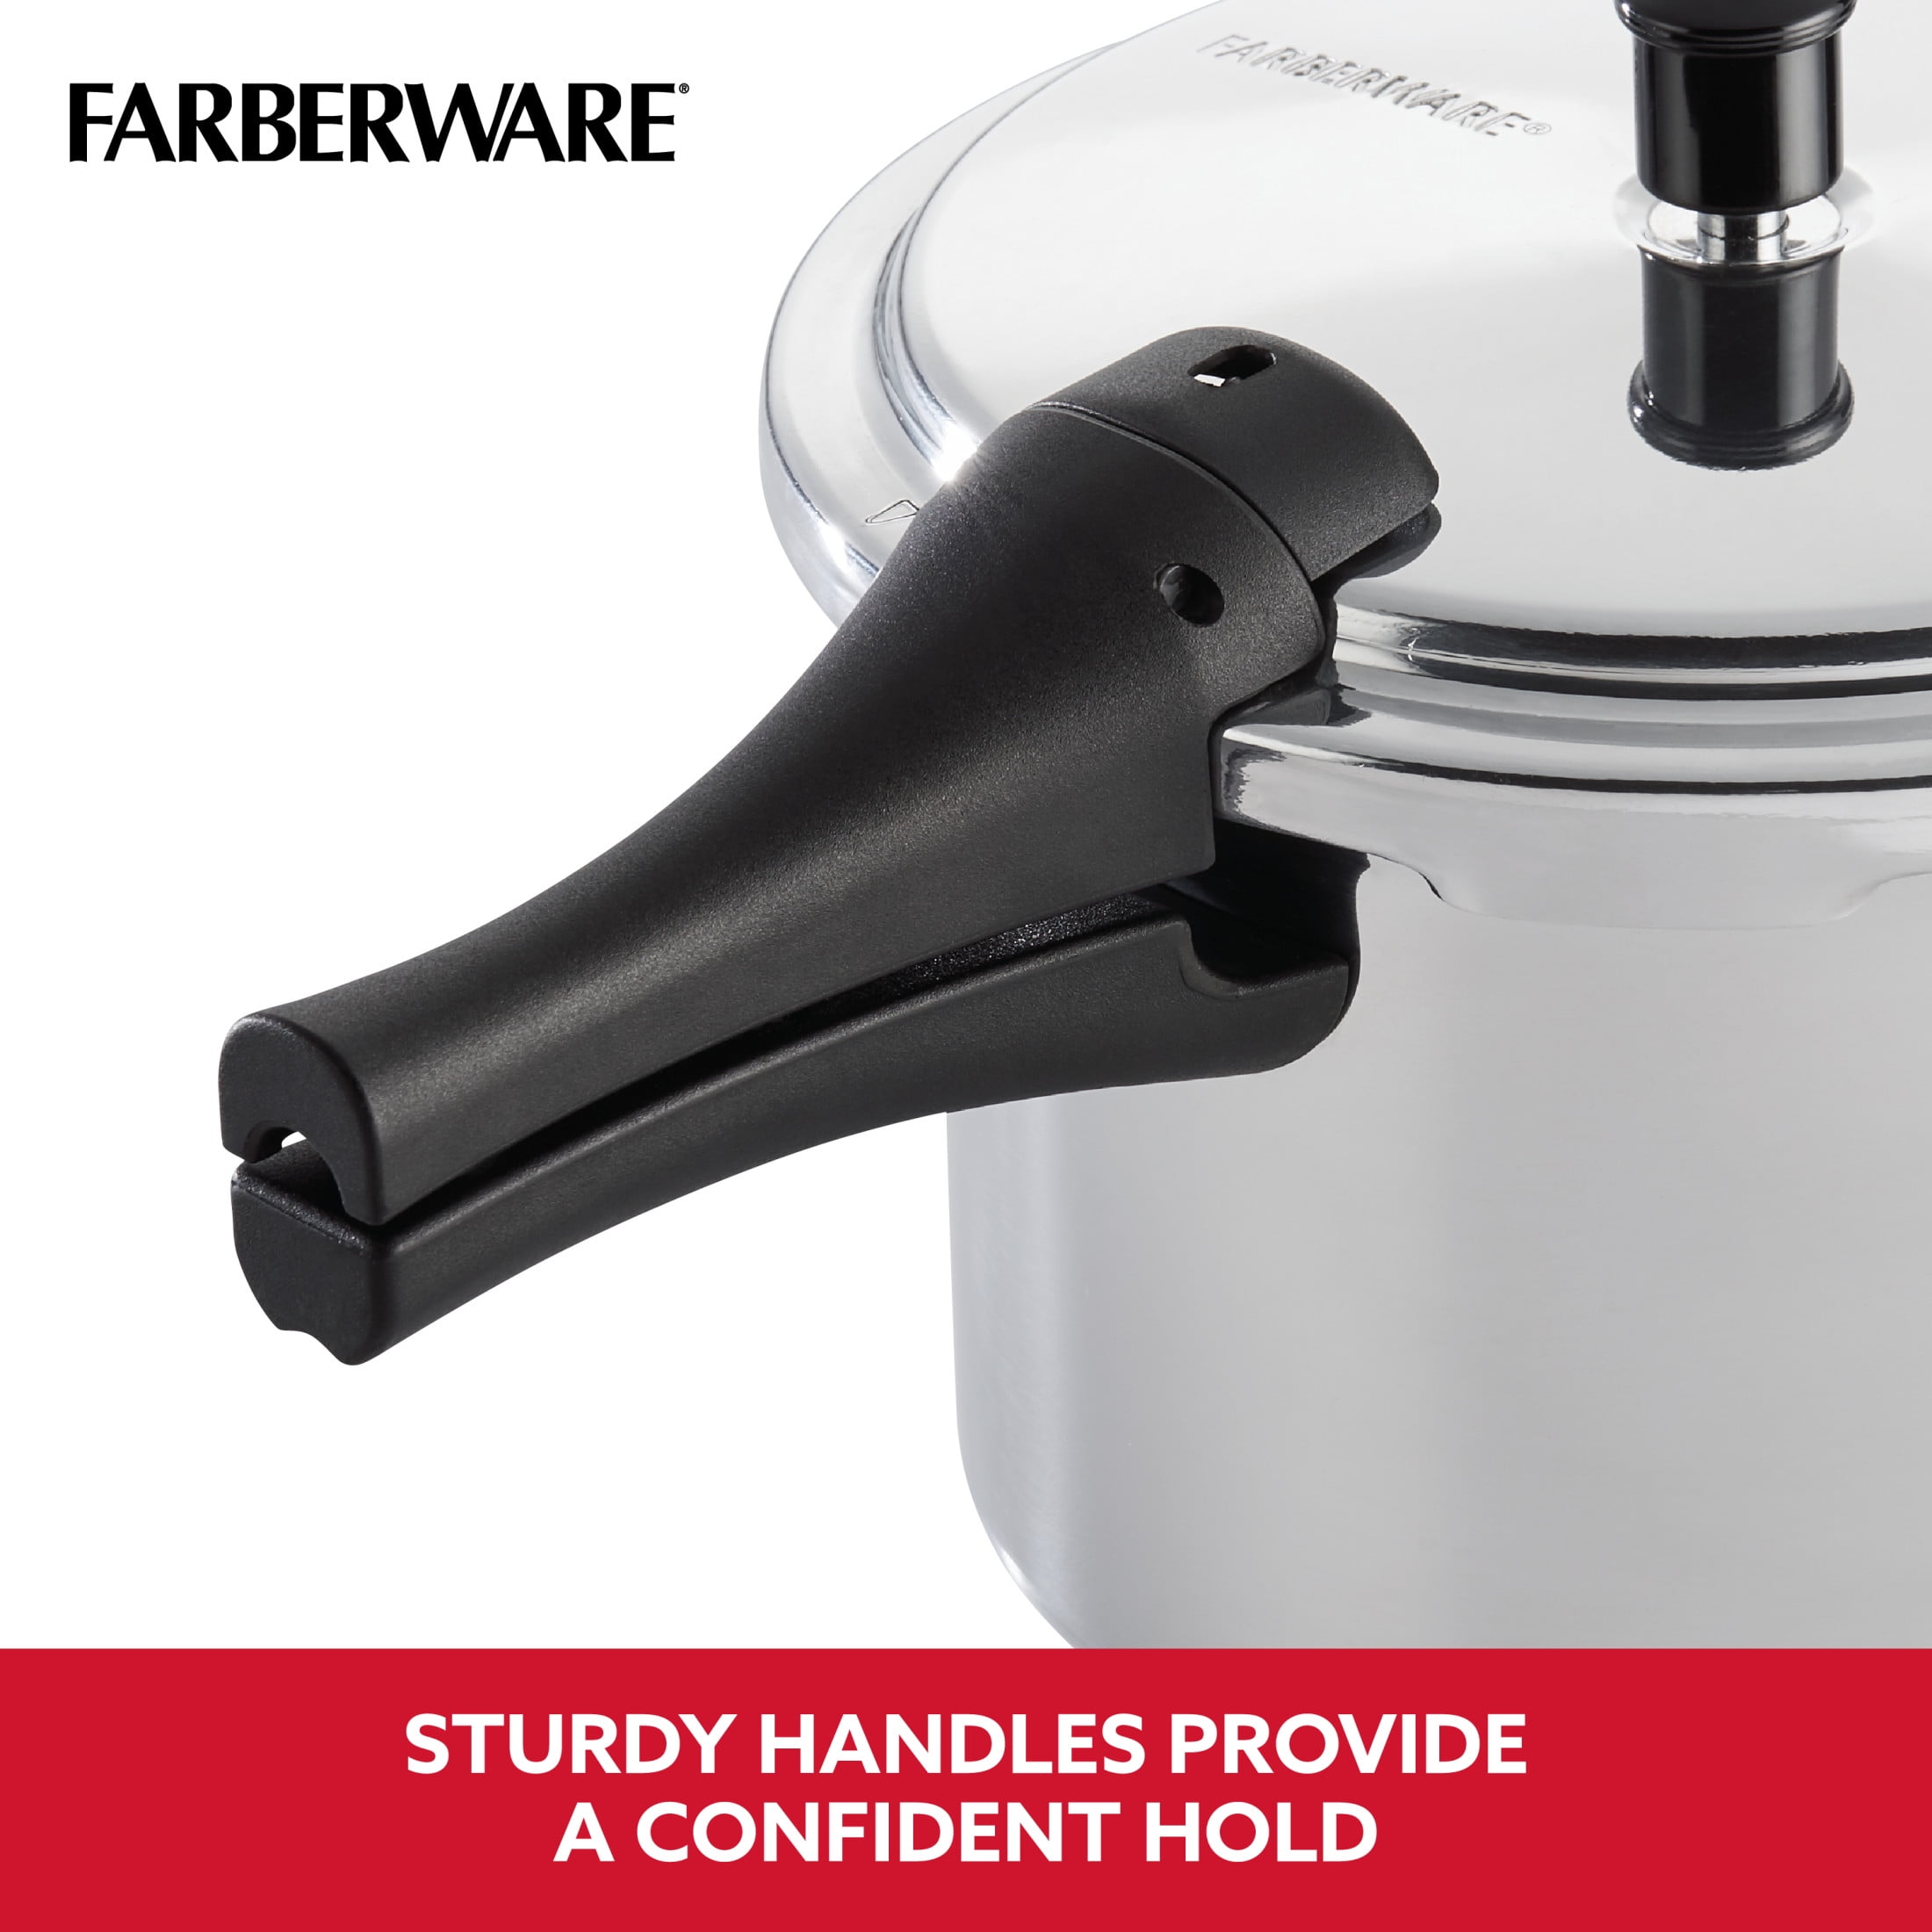 Farberware 6Qt Aluminium Stovetop Pressure Cooker NOS No Box W/  Manual/Recipes